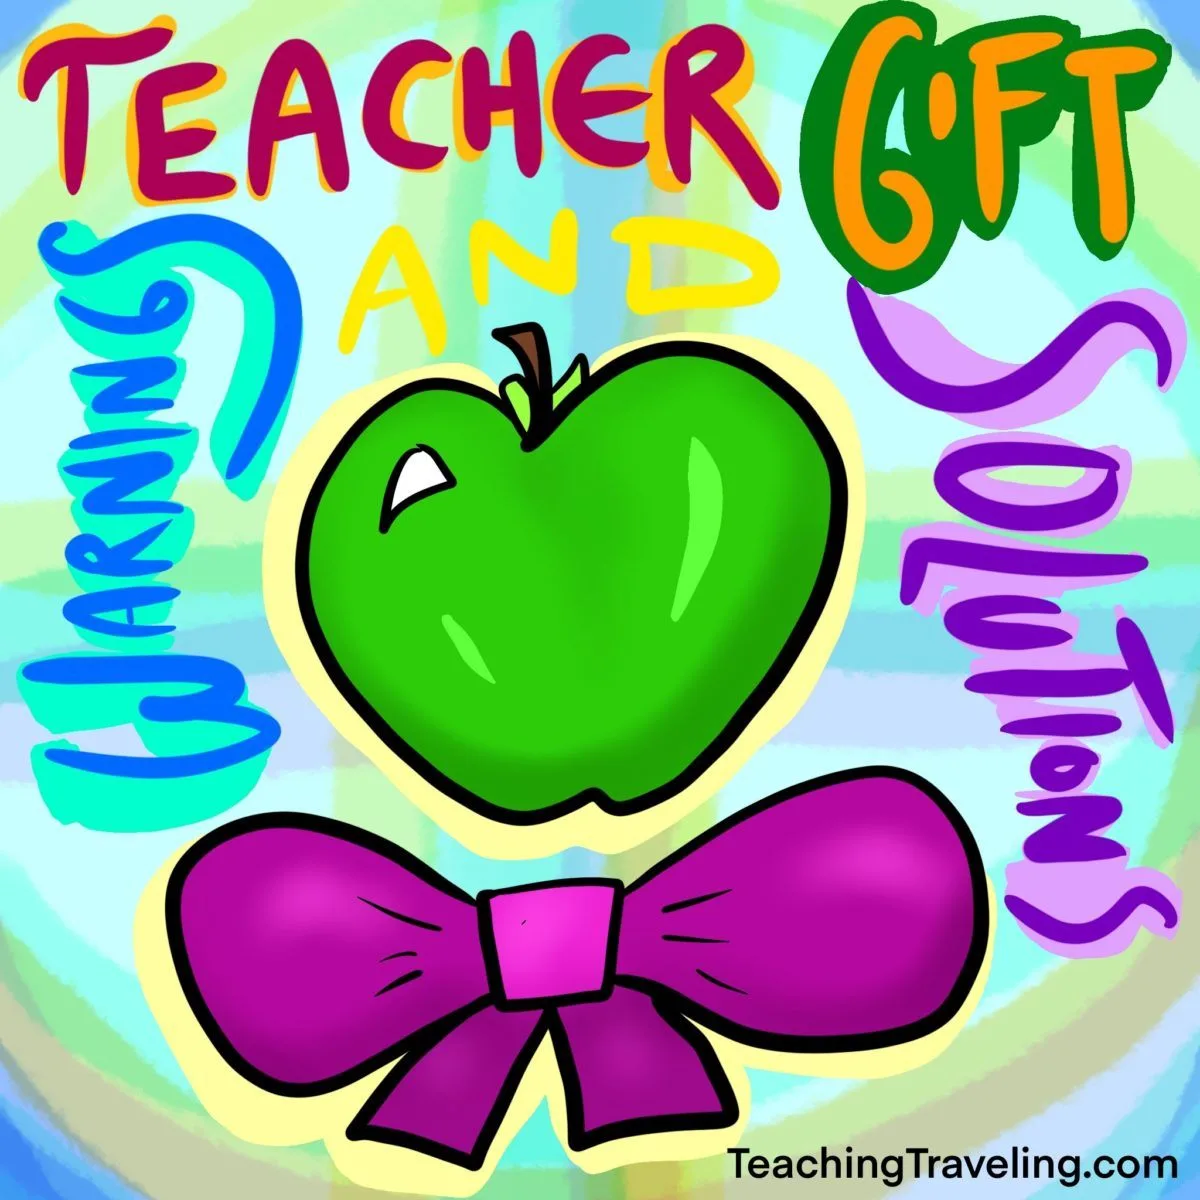 Teacher Appreciation Gifts Teacher Gifts For Women Funny Teacher Christmas  Gifts | eBay